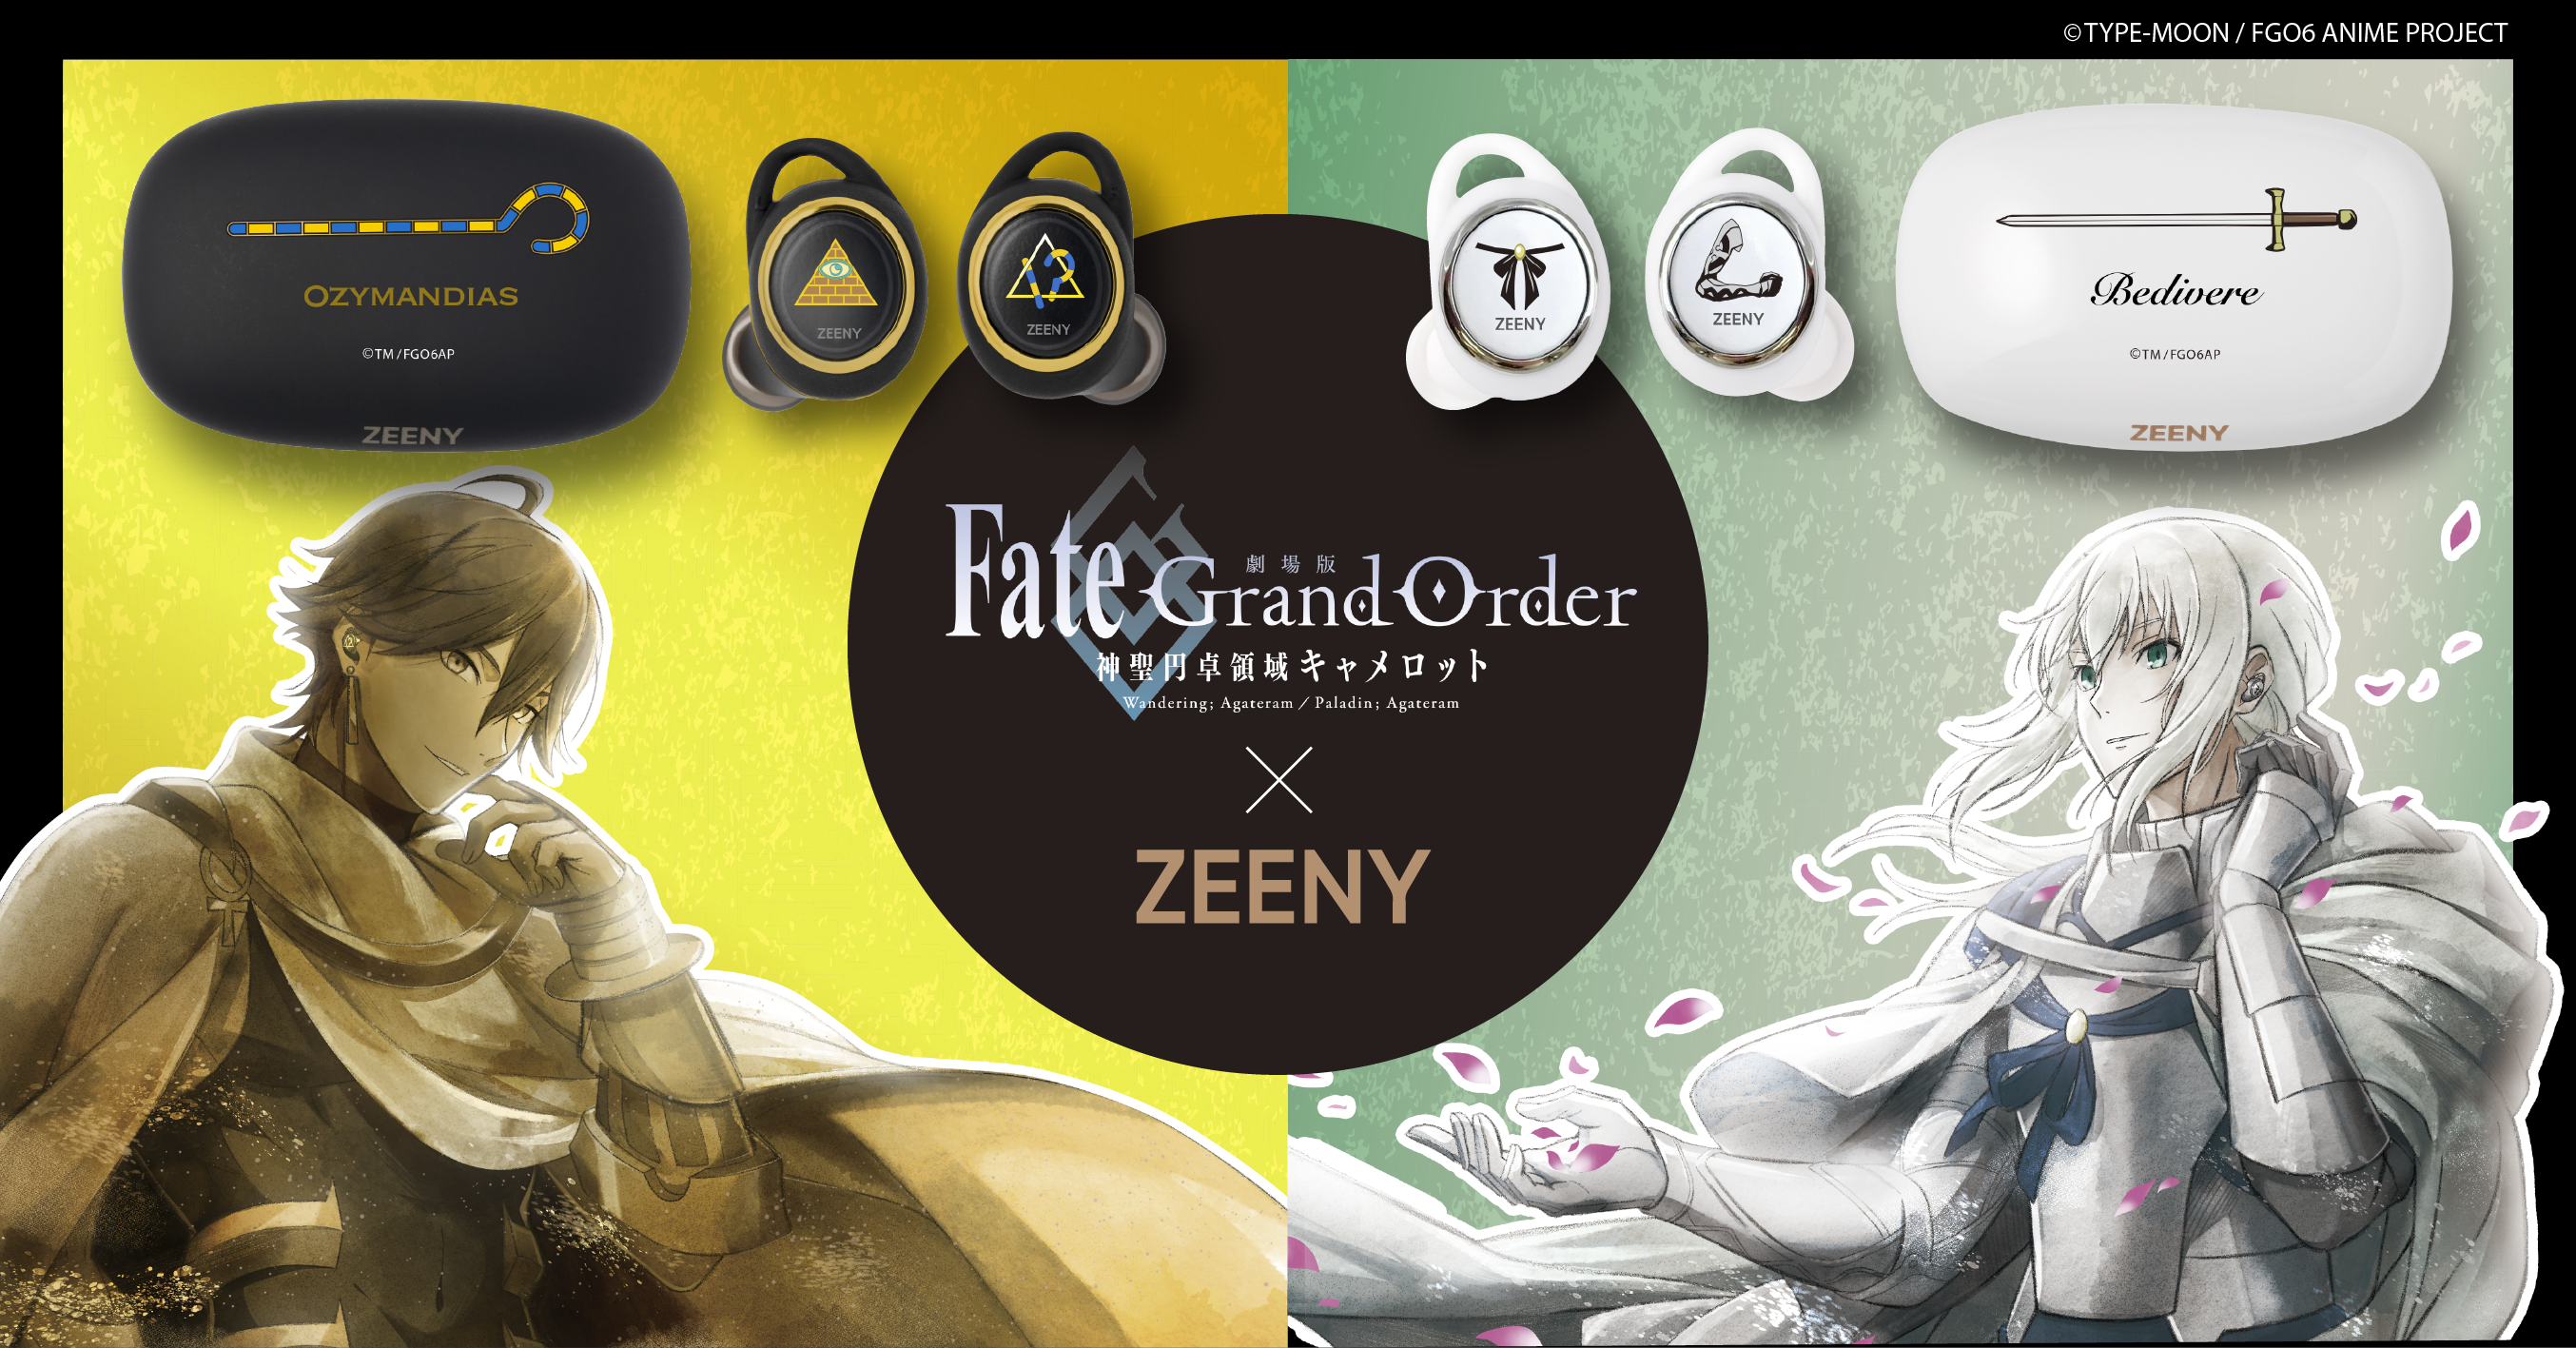 再販決定 劇場版 Fate Grand Order 神聖円卓領域キャメロット ベディヴィエール オジマンディアス 2キャラクター のコラボレーションイヤフォンの再受注販売開始 ネインのプレスリリース